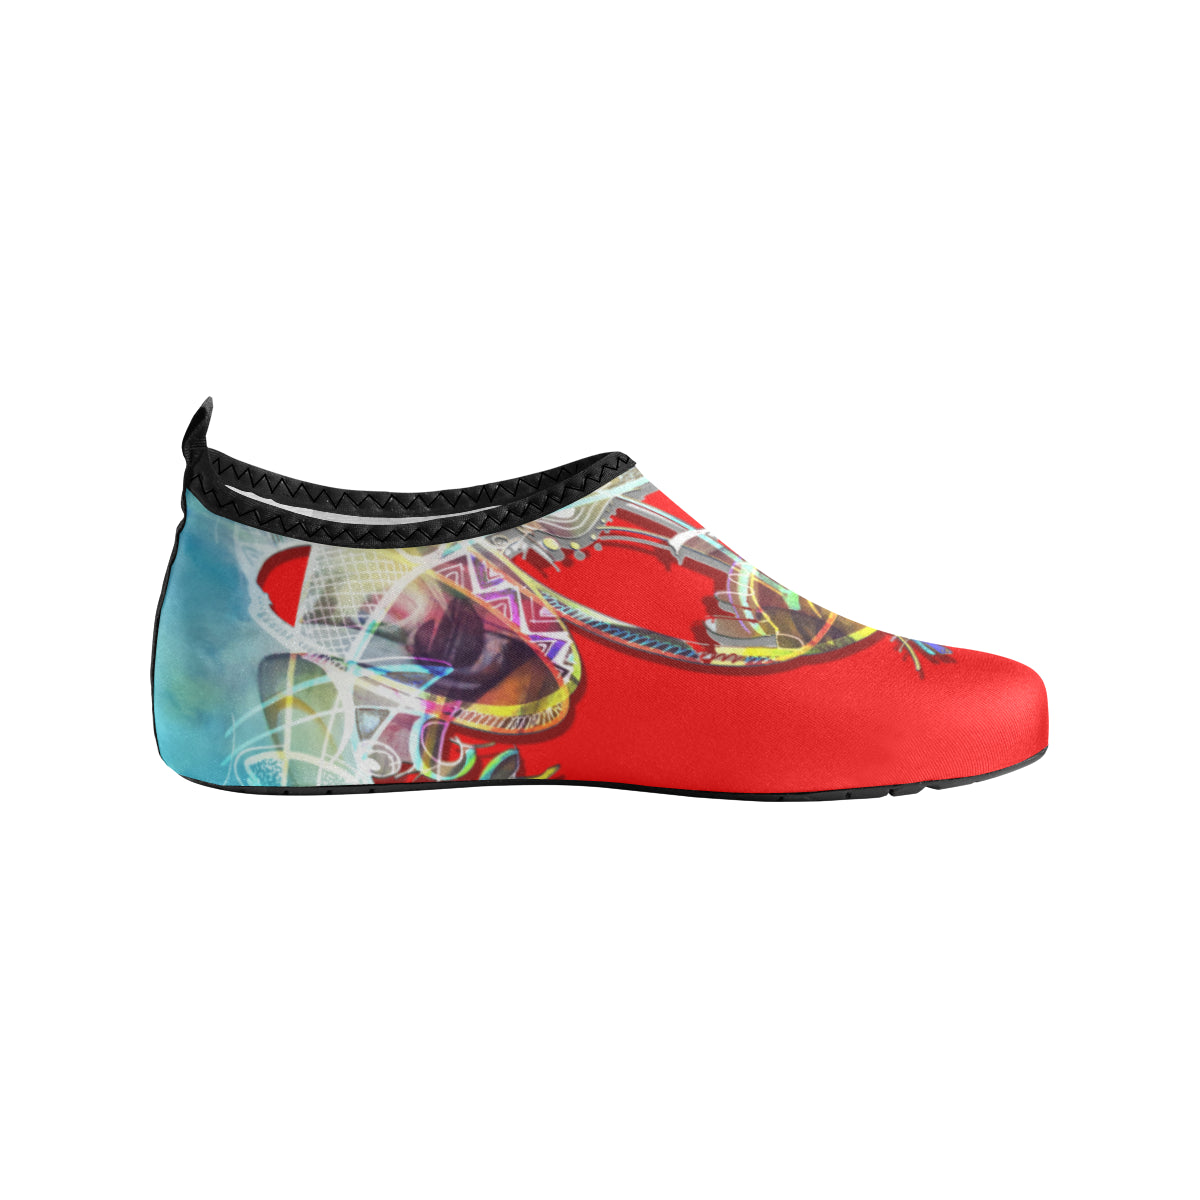 Chaussures aquatiques "Rouge corail" (femme)